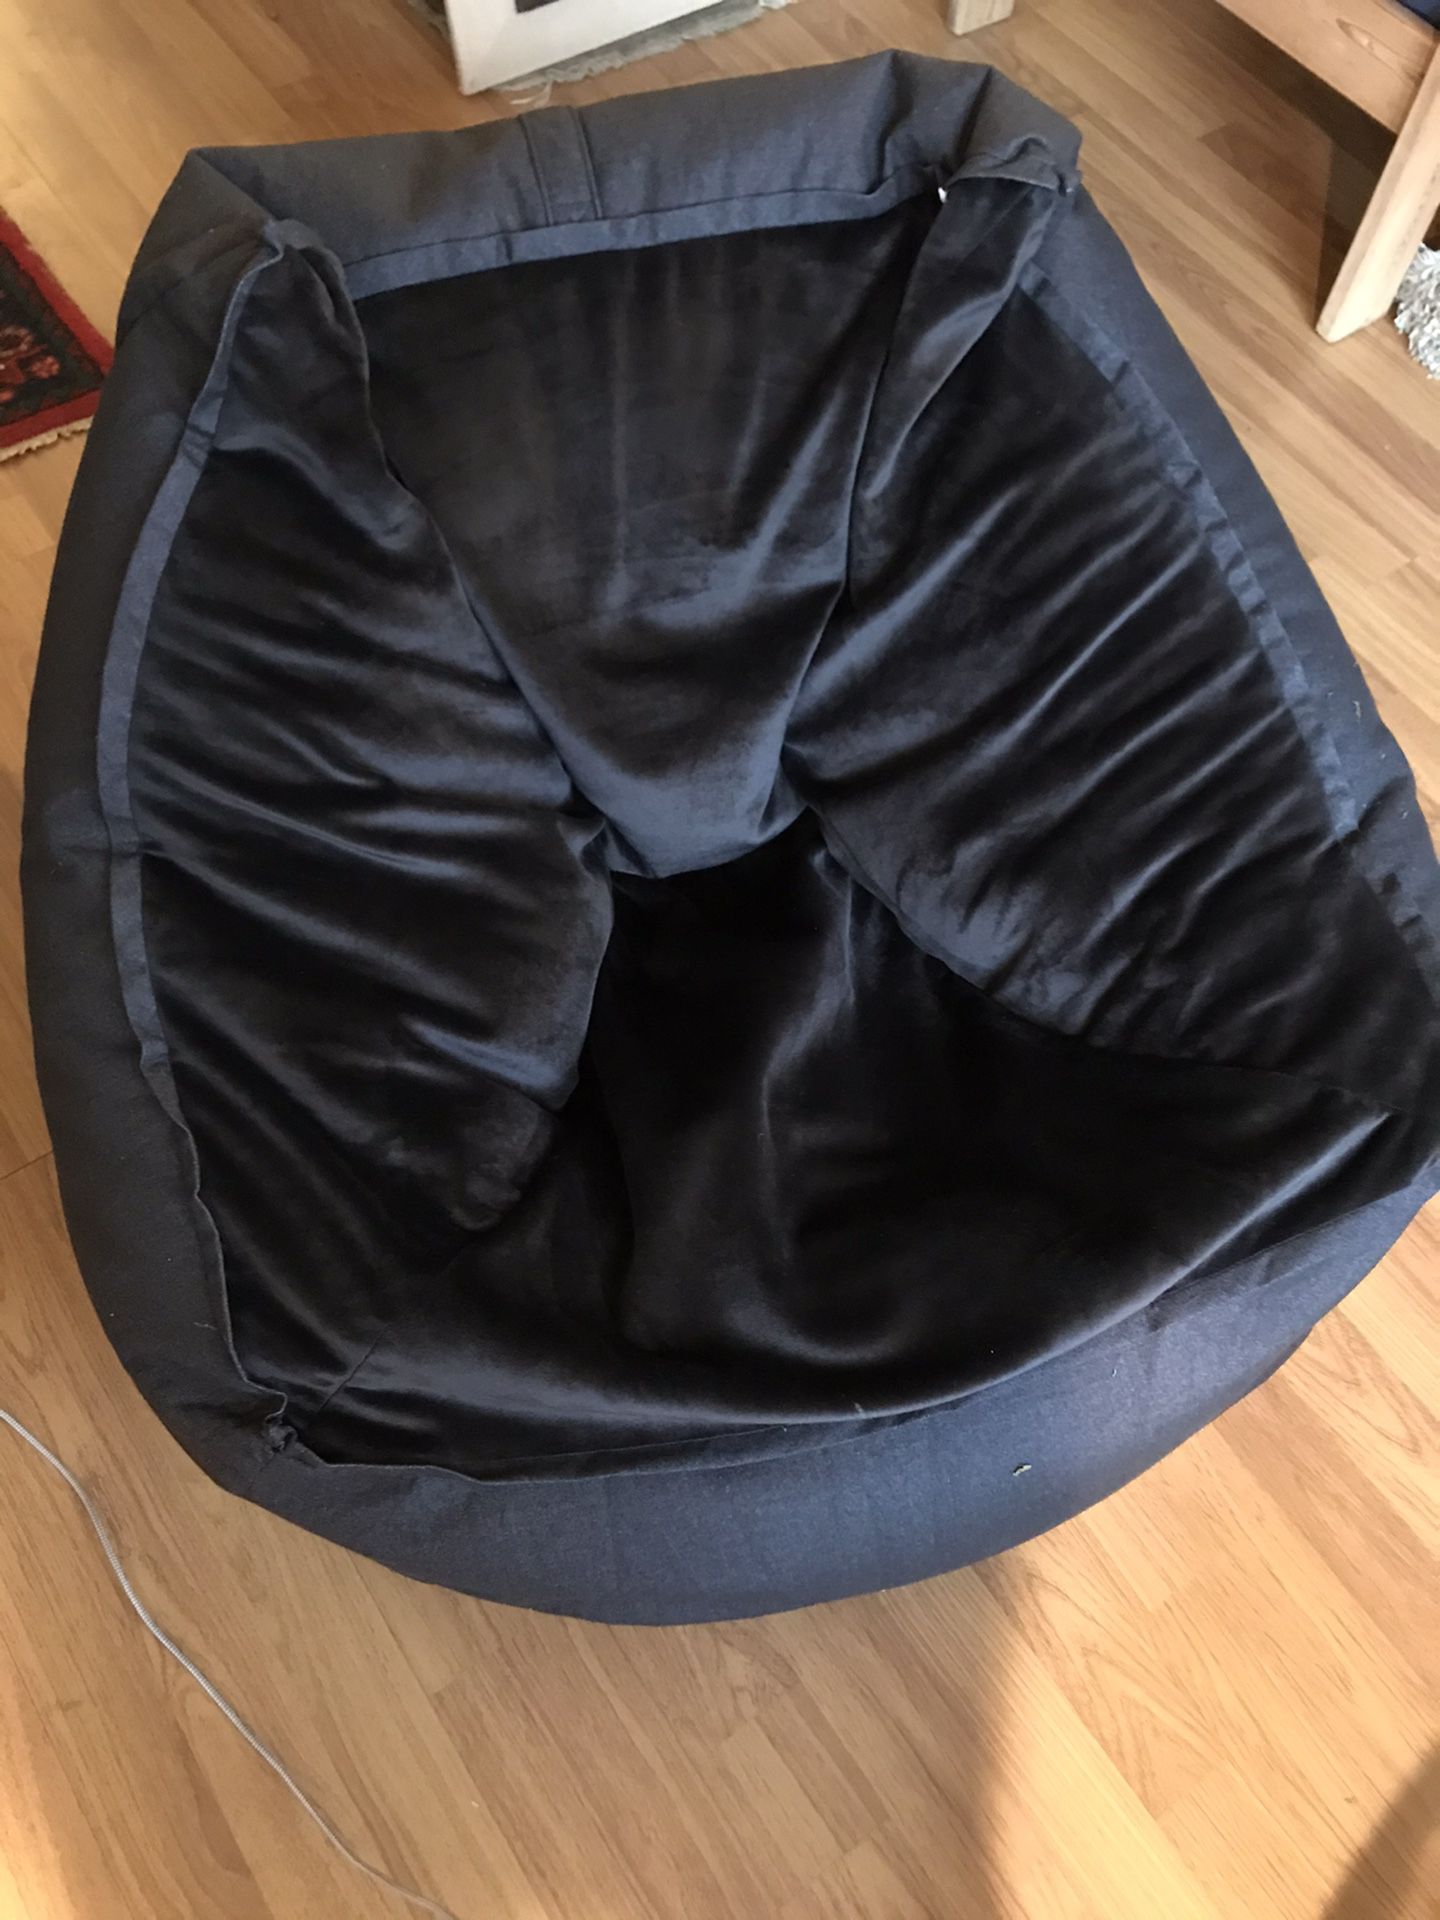 Bean Bag Chair For Kids $40